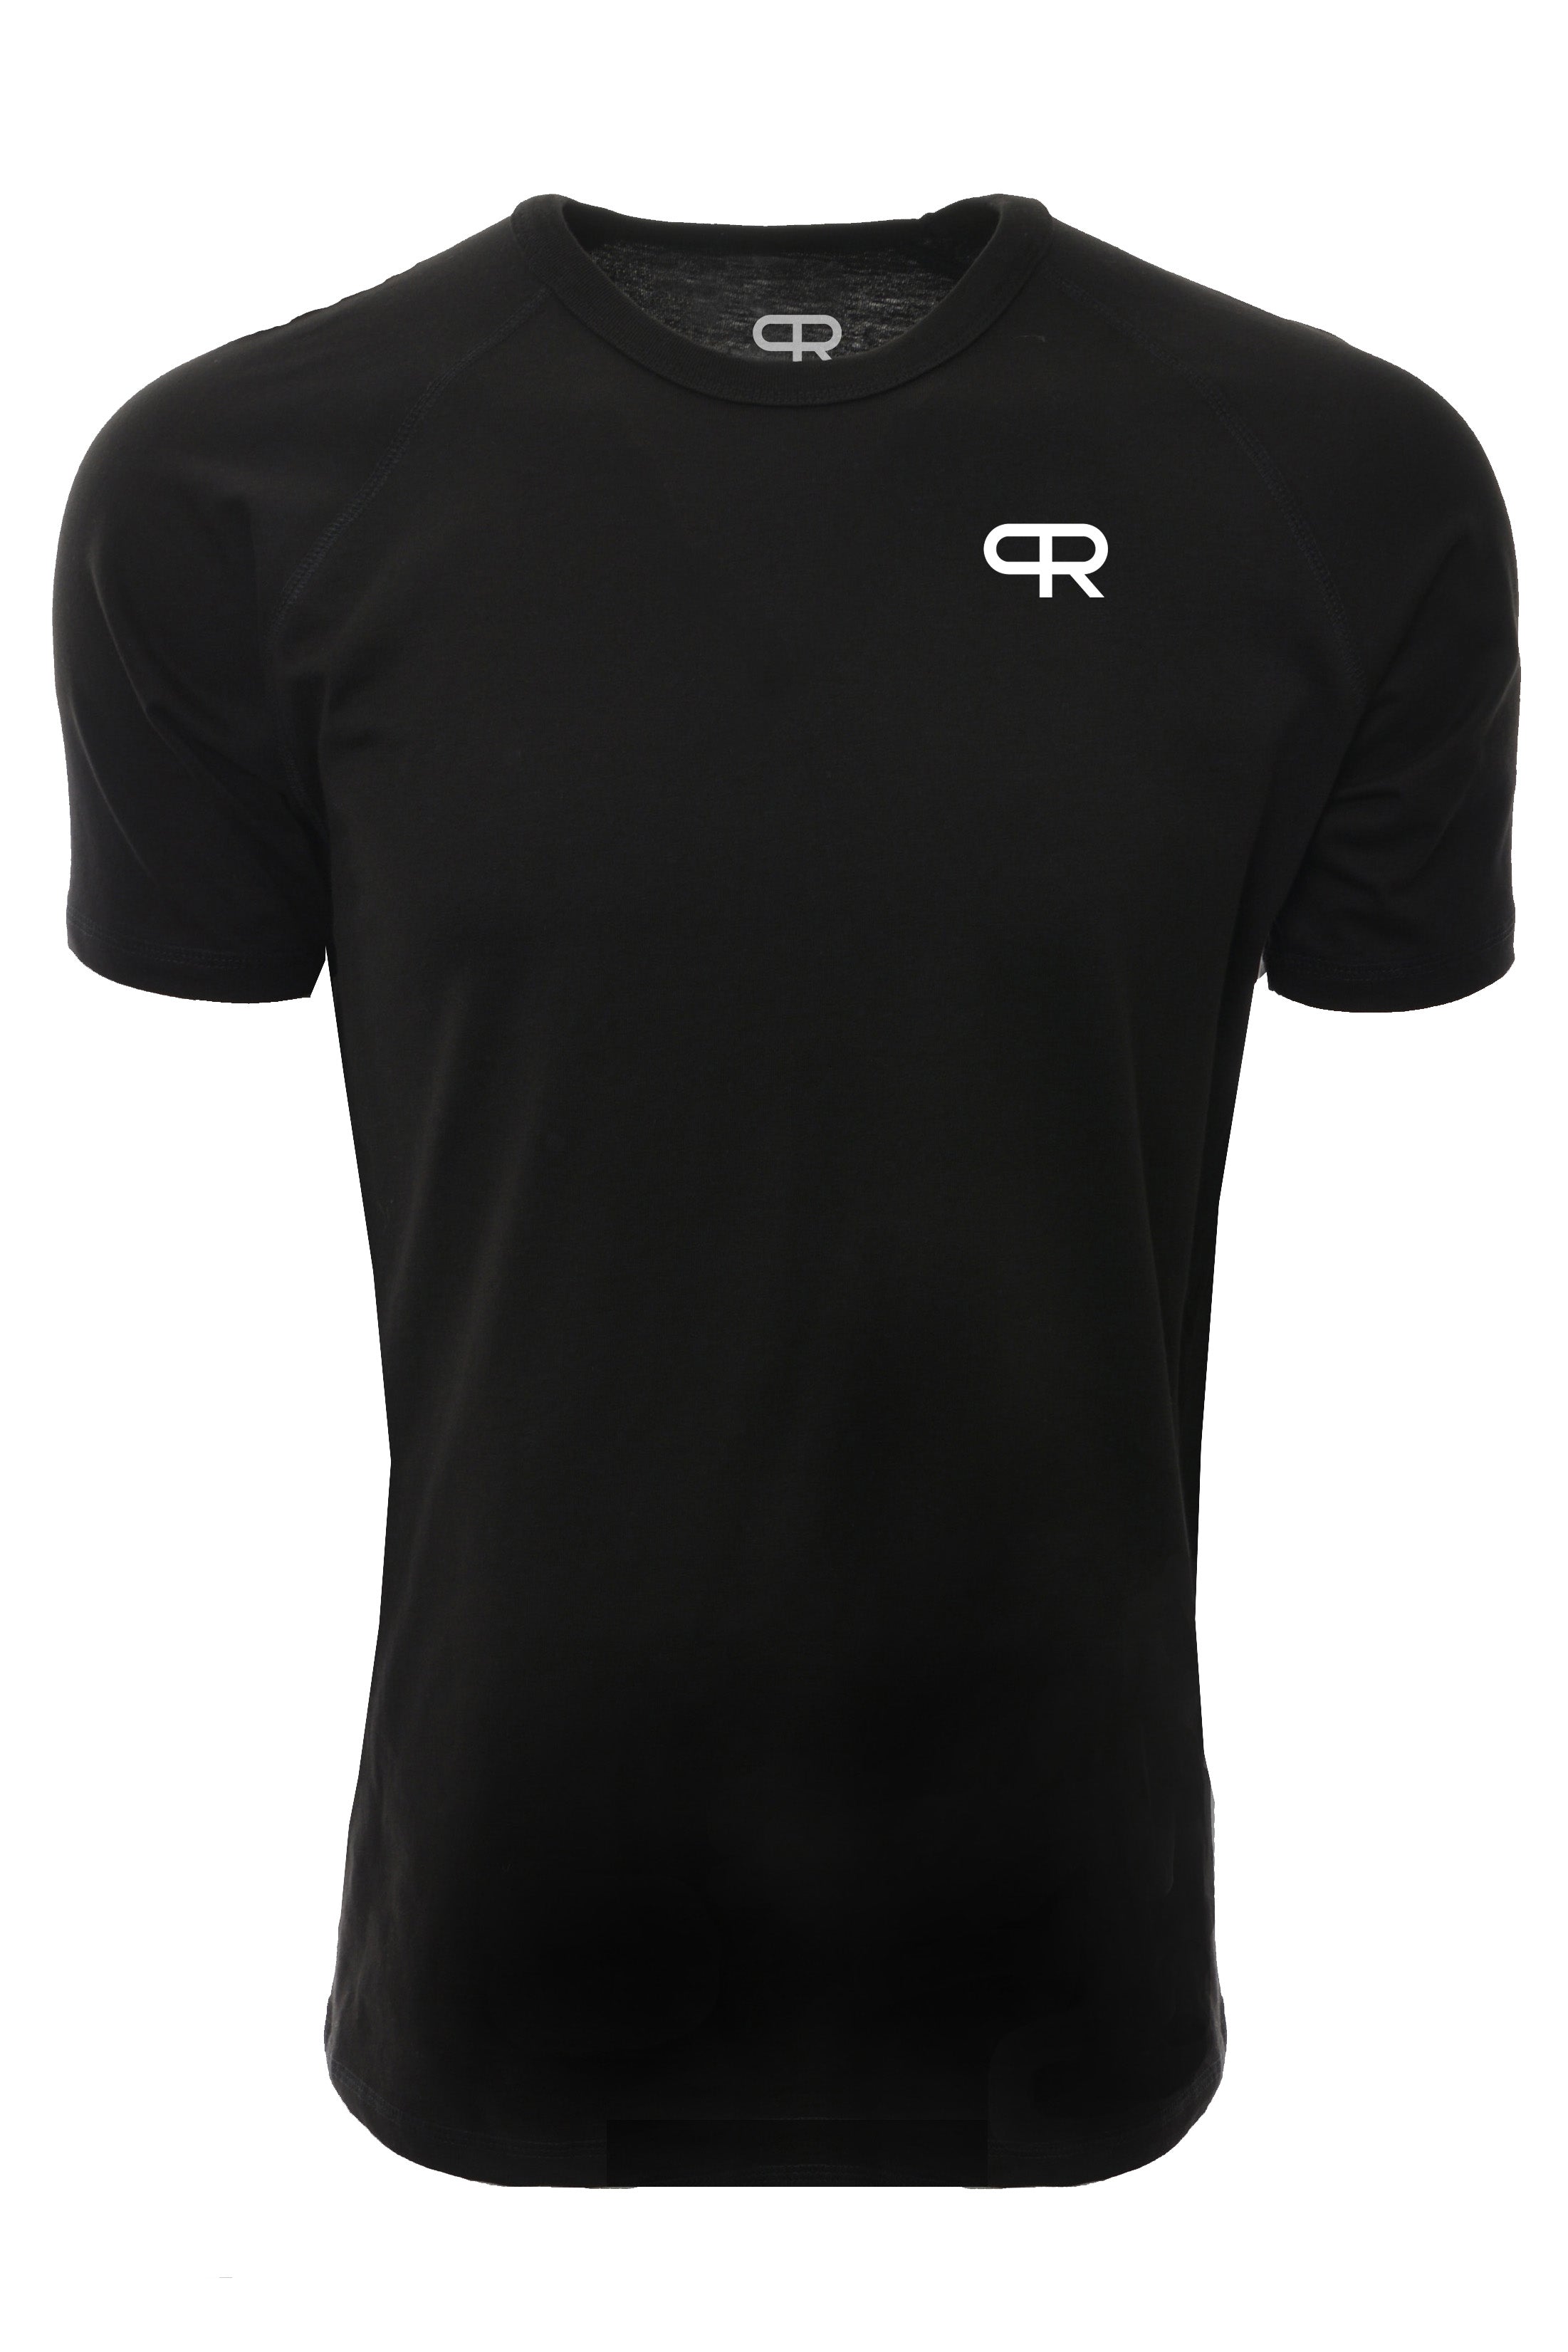 PR Raglan Tech Shirts - PR402 - Black